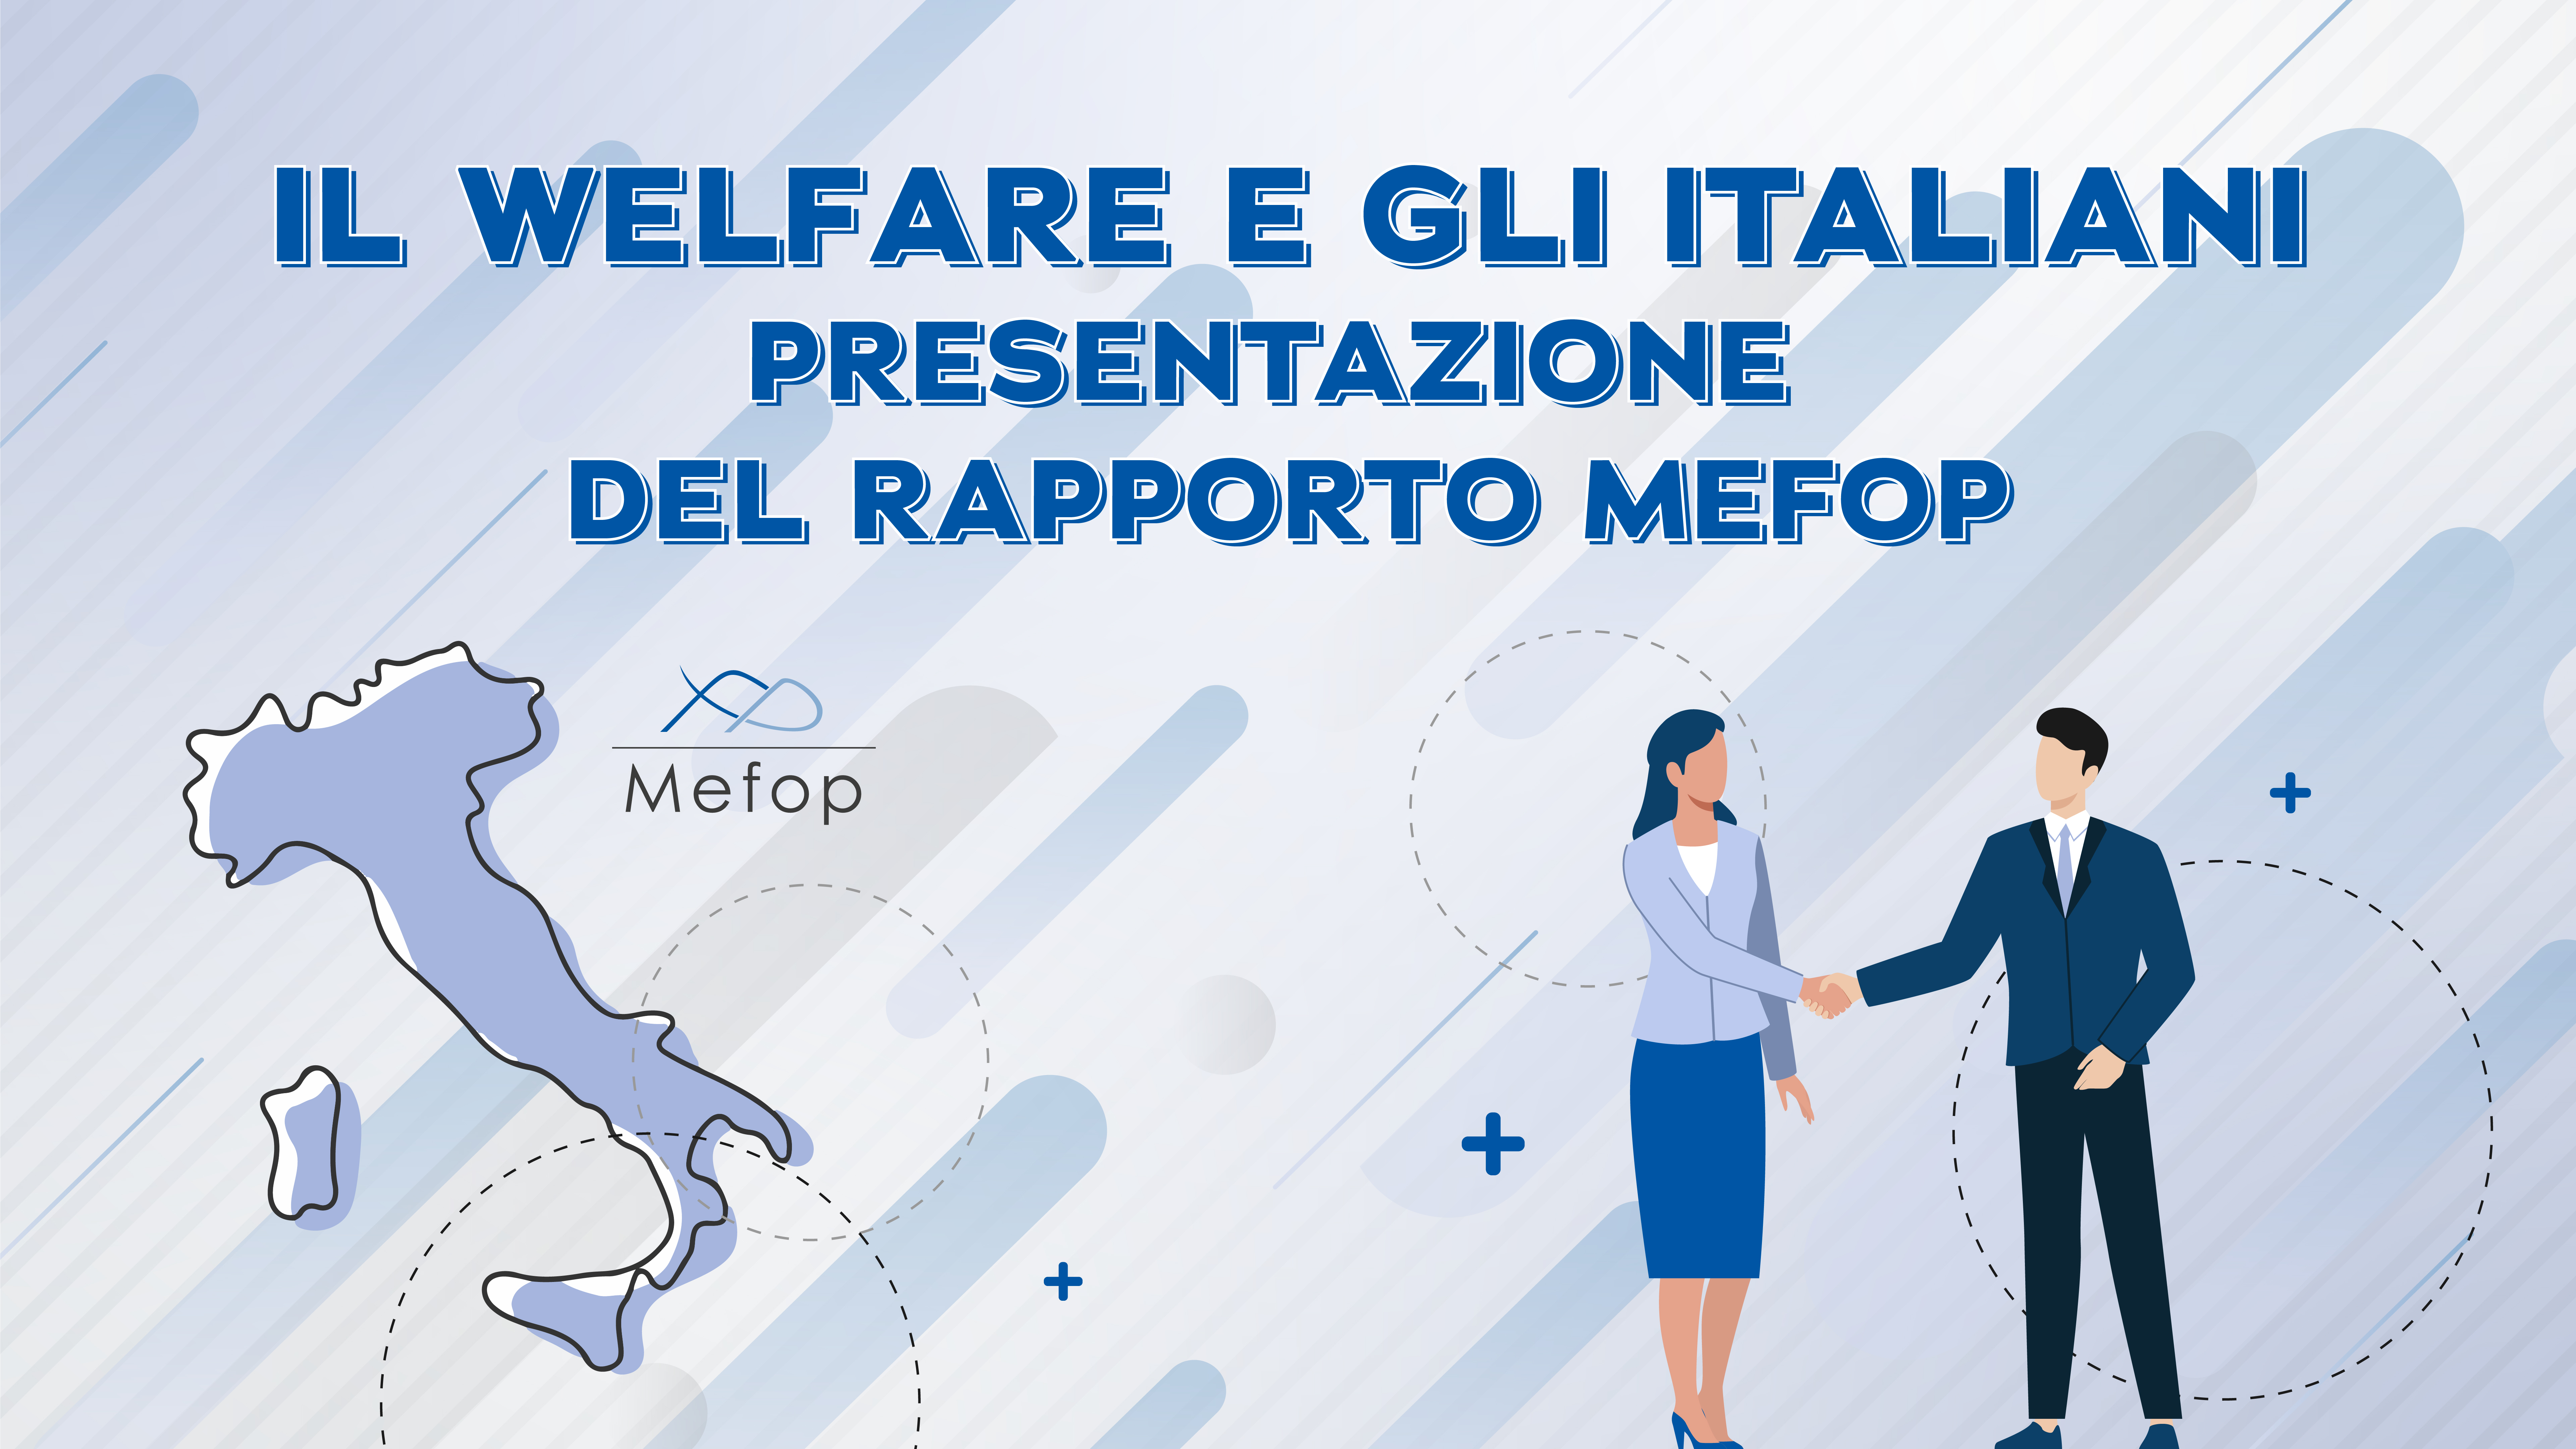 Presentazione Rapporto Mefop - Marè, Motroni, Porcelli, Vidoli